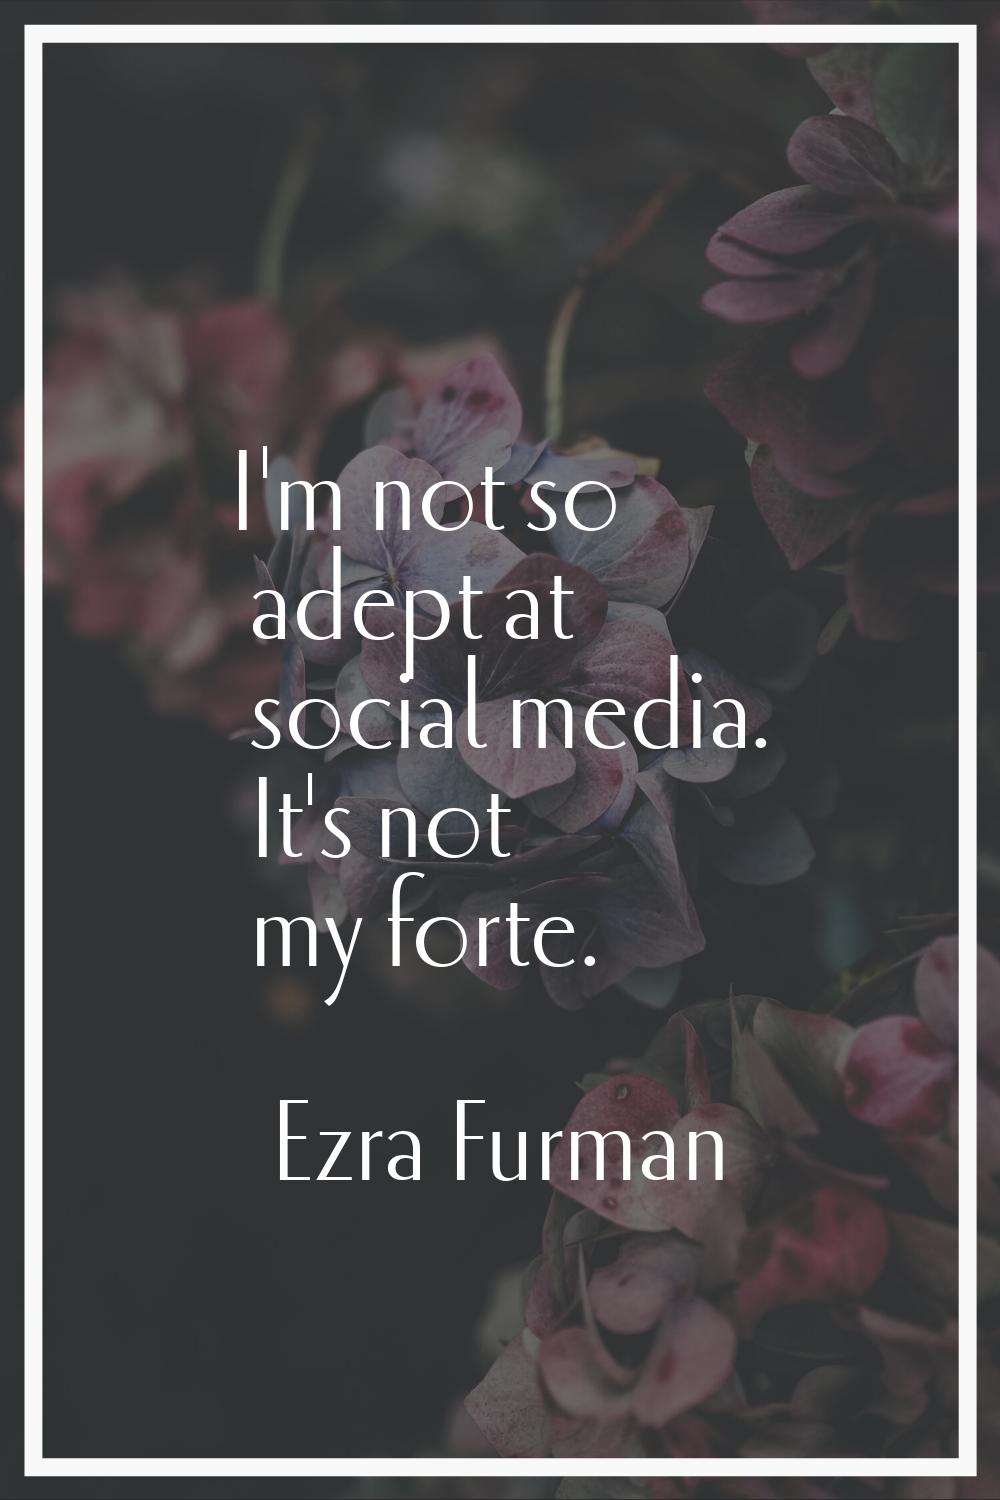 I'm not so adept at social media. It's not my forte.